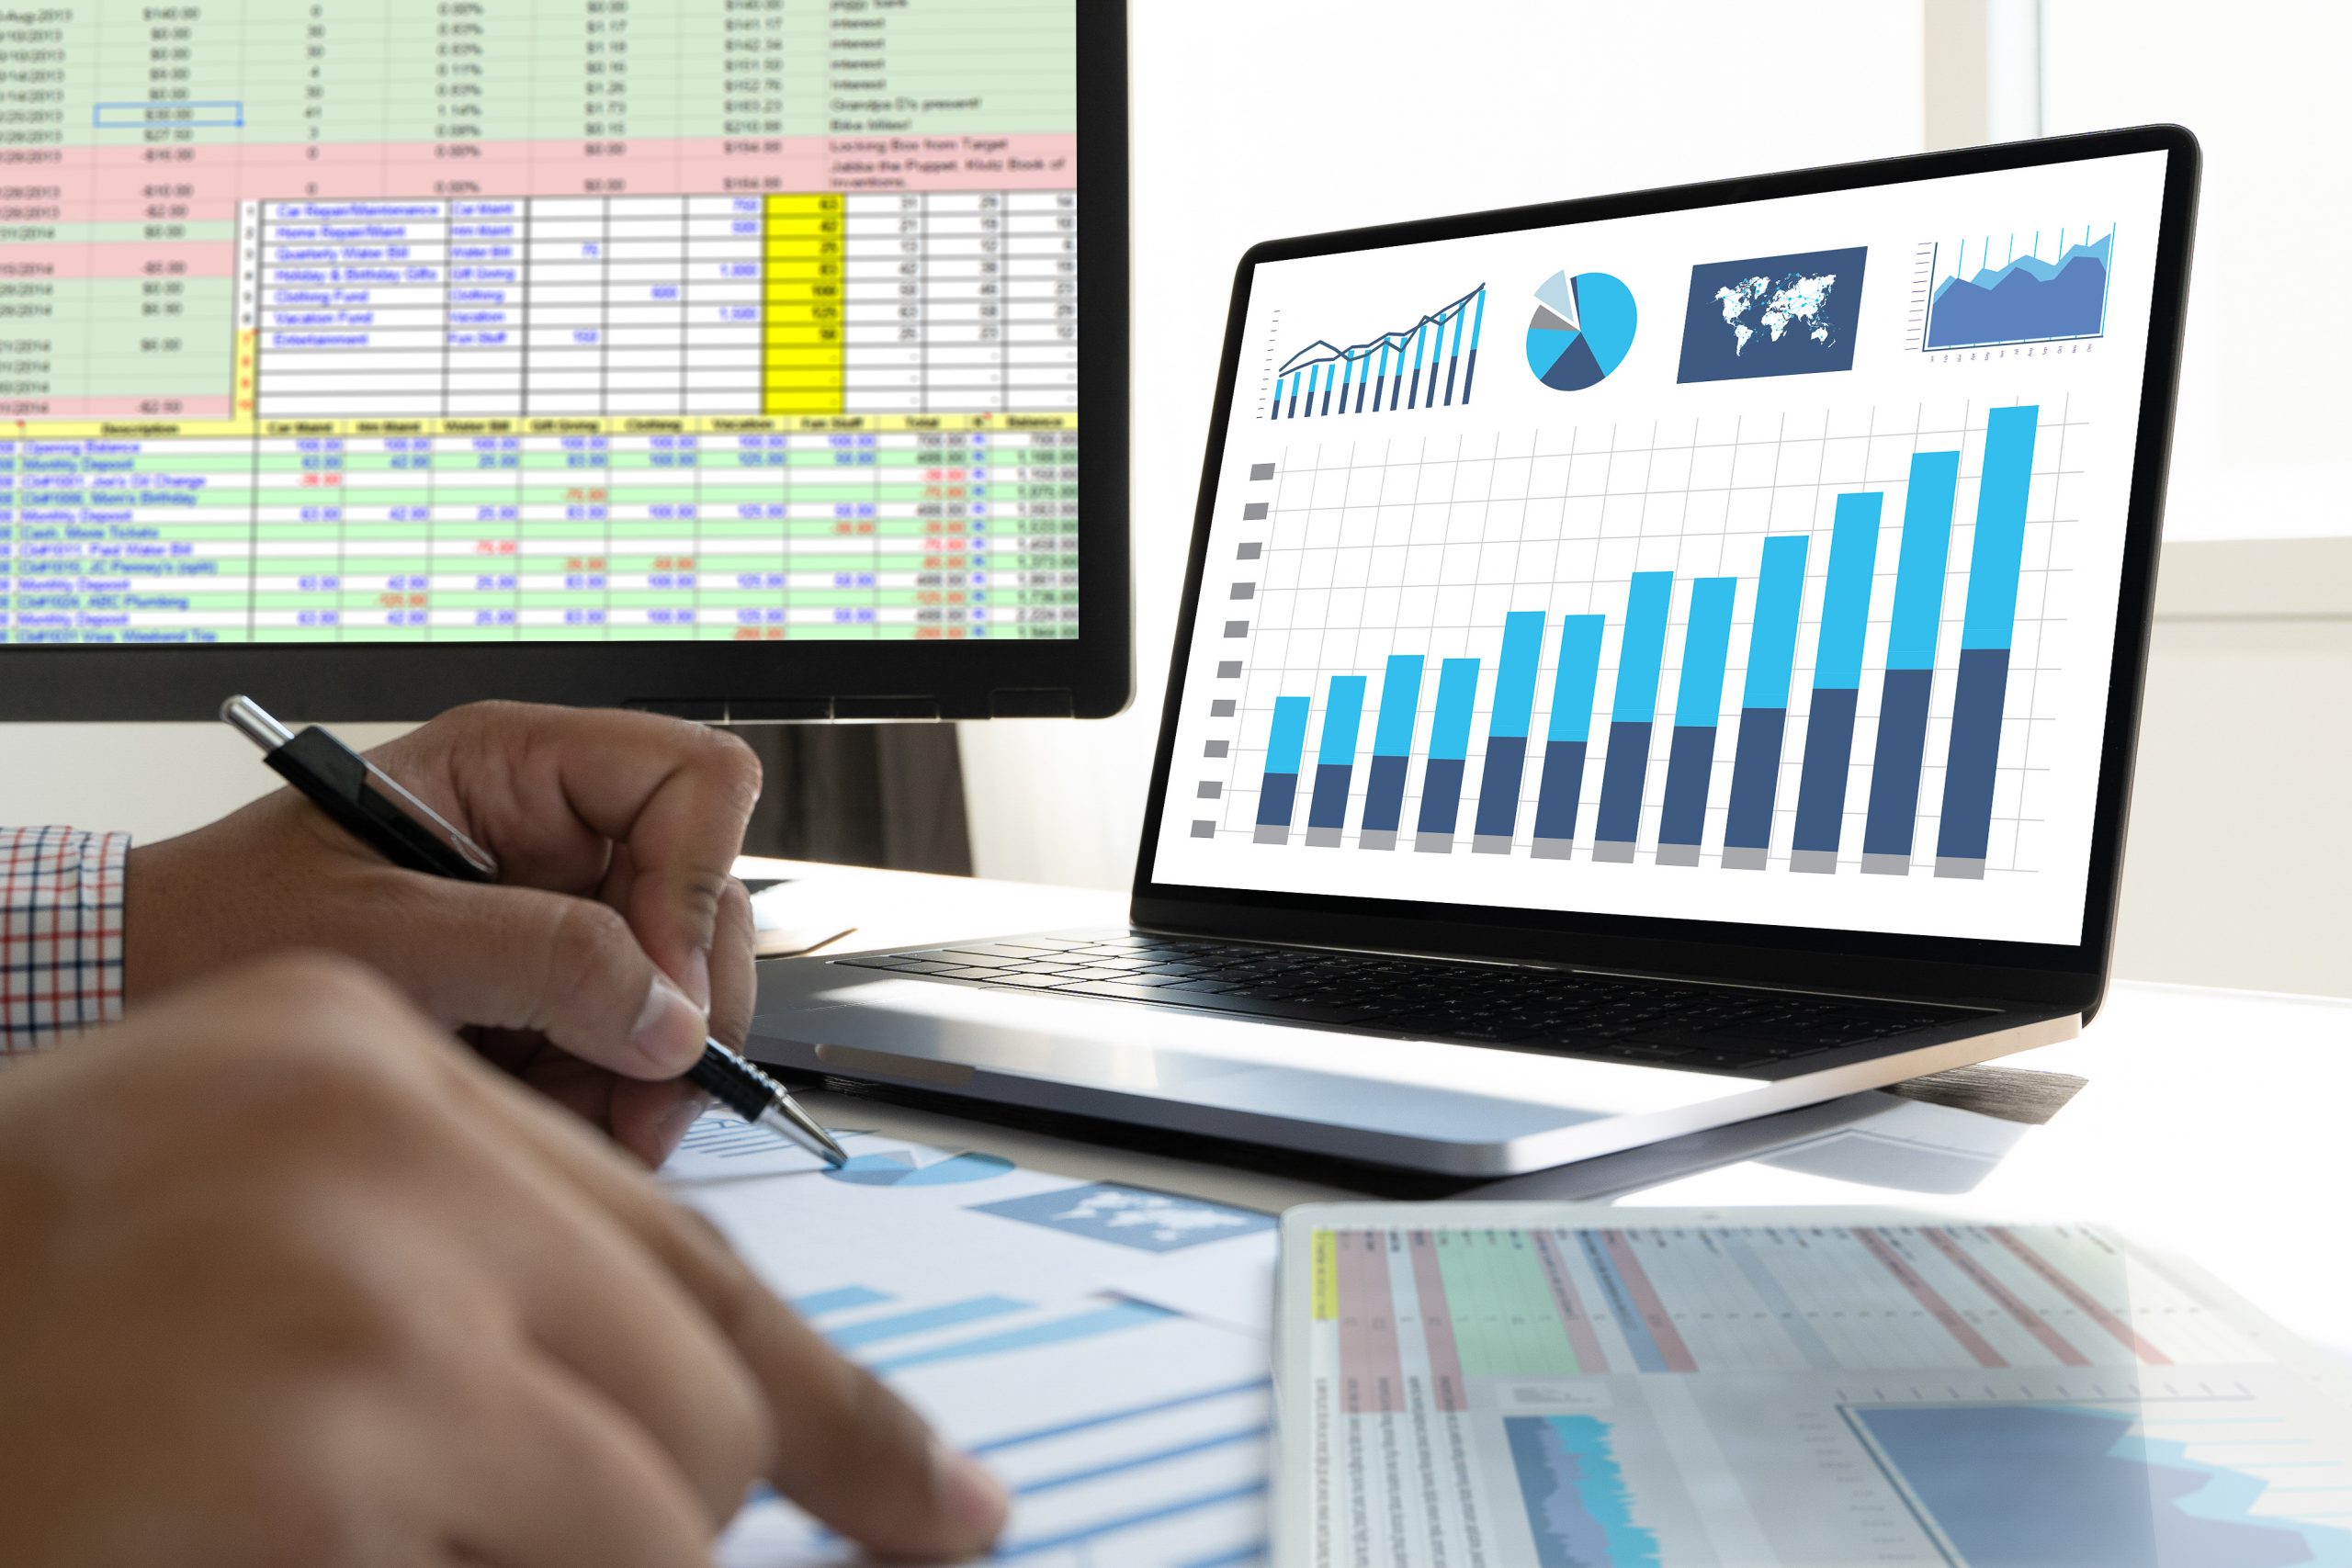 Work Hard Data Analytics Statistics Information Business Technology.